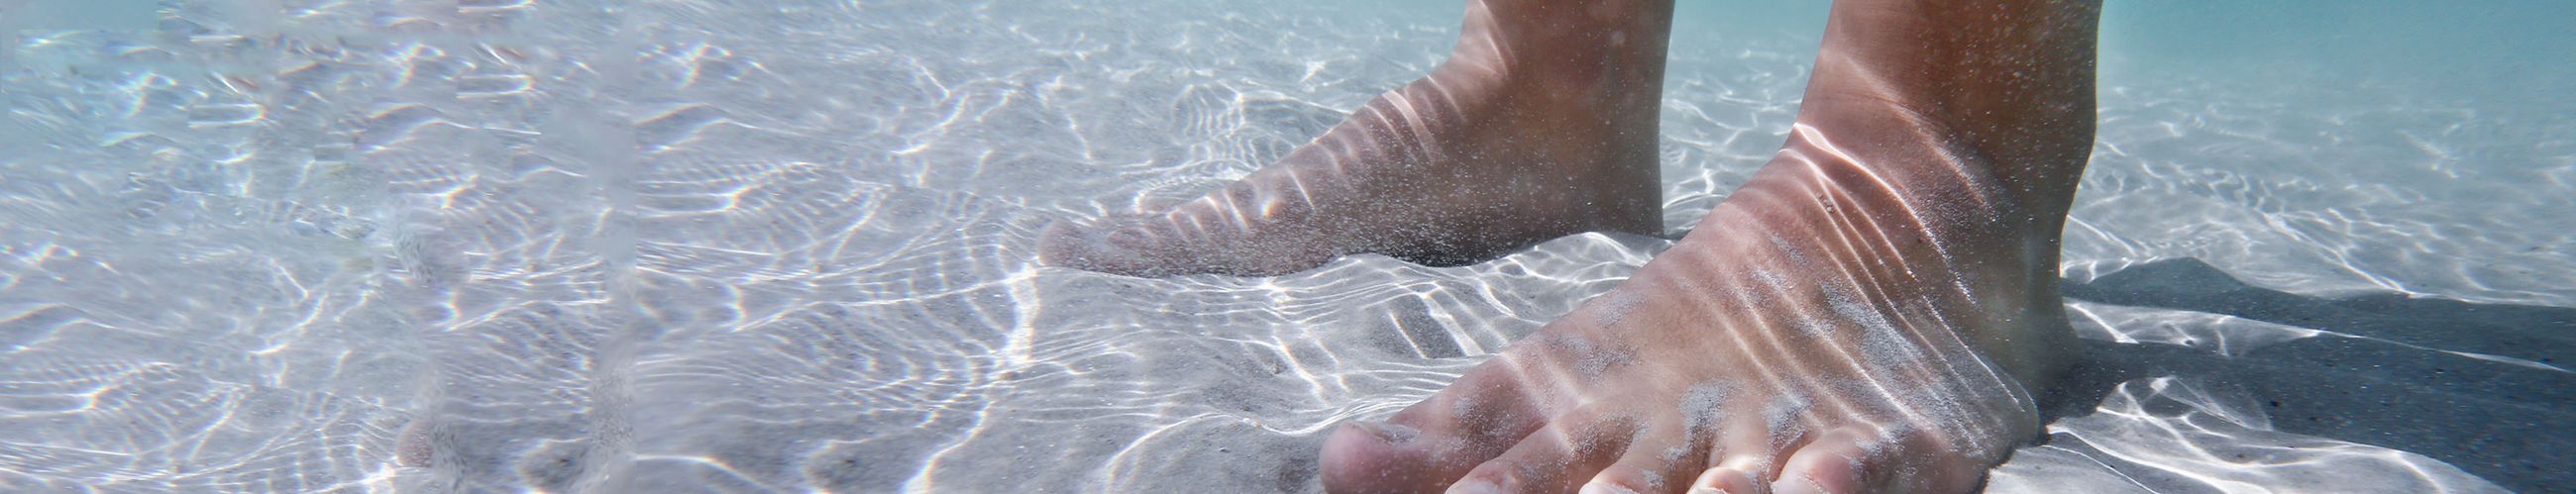 Füße unter Wasser auf Sand